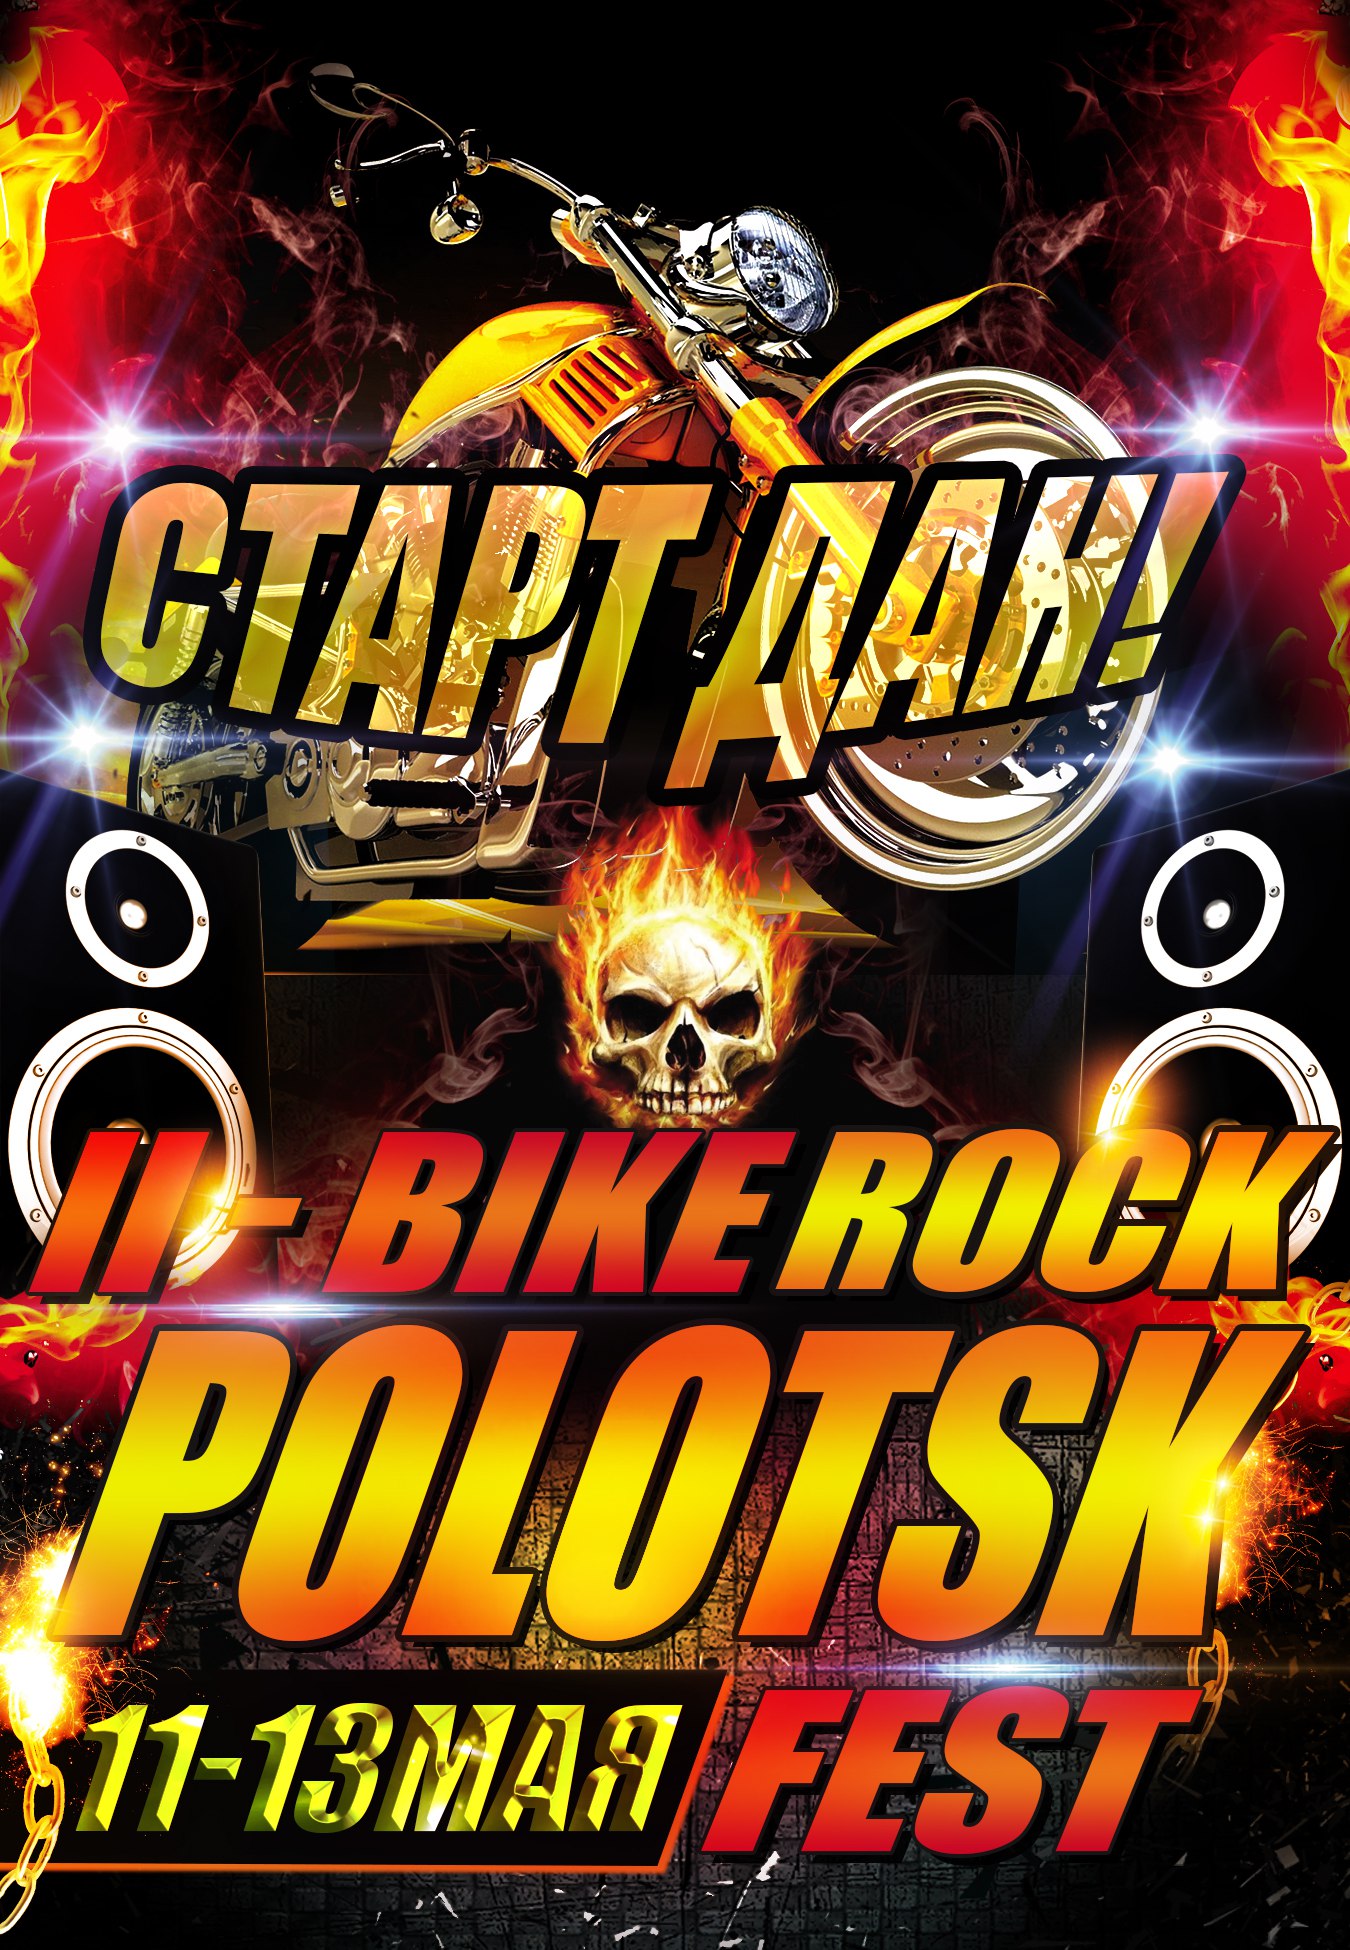 Bike Rock Fest Polotsk 2018